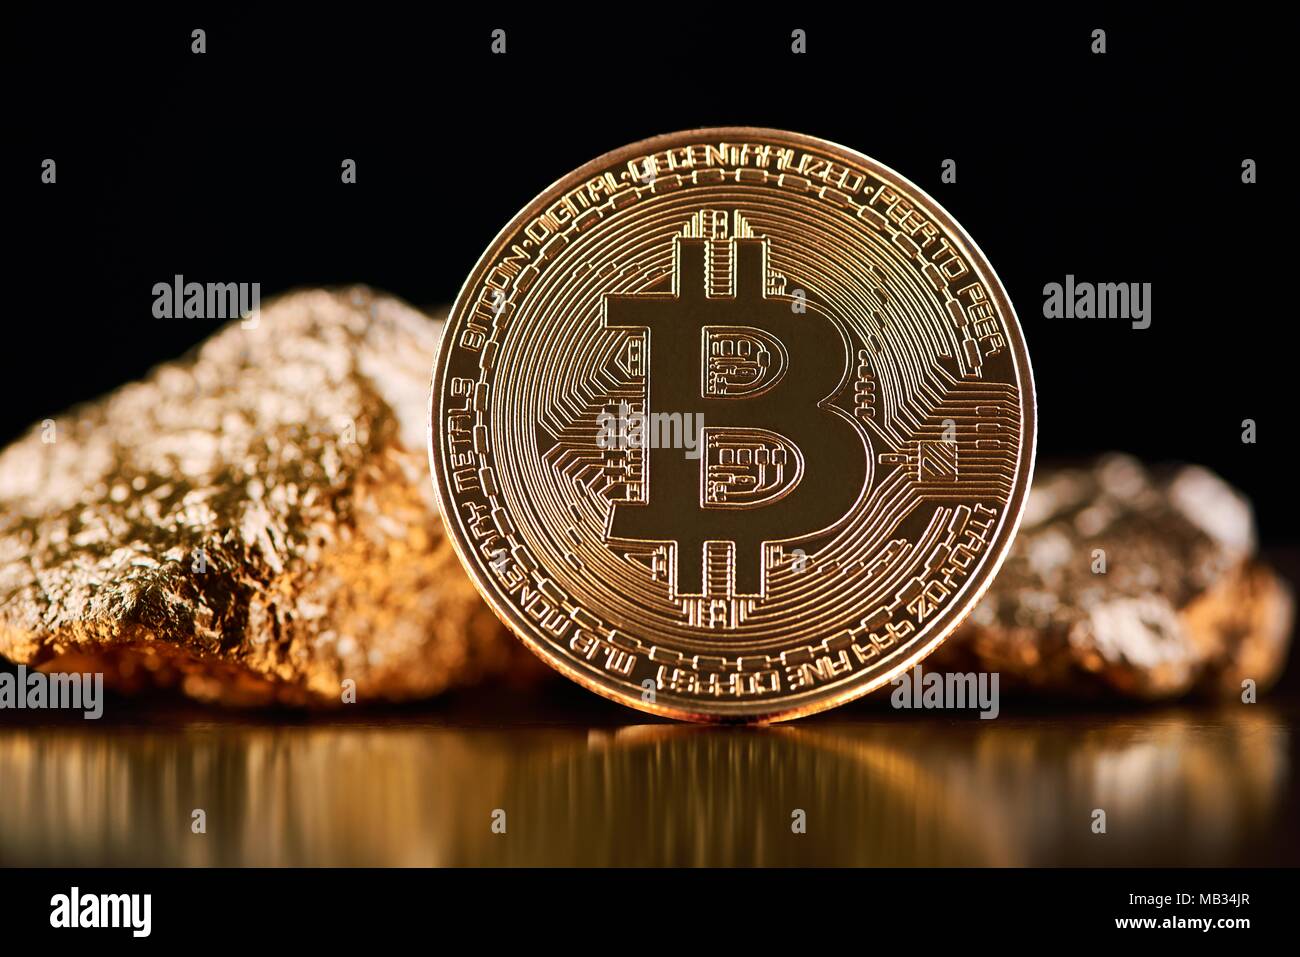 Bitcoin d'or en face de morceaux d'or représentant les deux tendances monde futuriste isolé sur fond noir. Monnaie virtuelle numérique blockchain l'exploitation minière de l'argent électronique exchange innovation business Banque D'Images